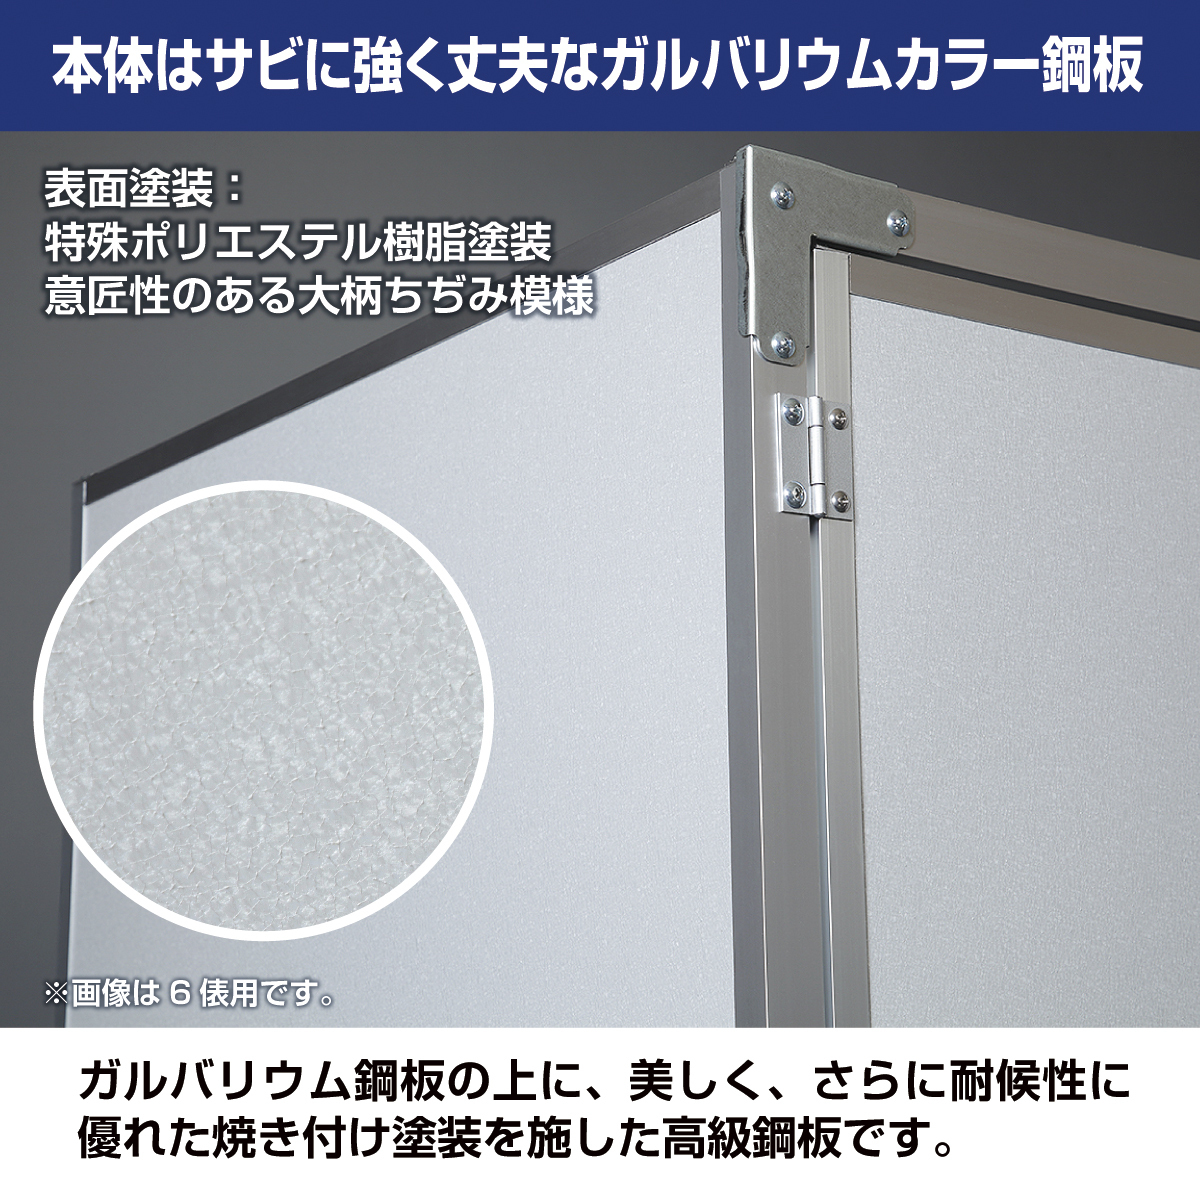  общий . рис шкаф для хранения ( рис шкаф )KN-09 9. для (30kg пакет ×18) способ дыра вентиляция . есть сделано в Японии река сторона завод неочищенный рис шкаф для хранения влажность плесень меры стратегический запас рис 